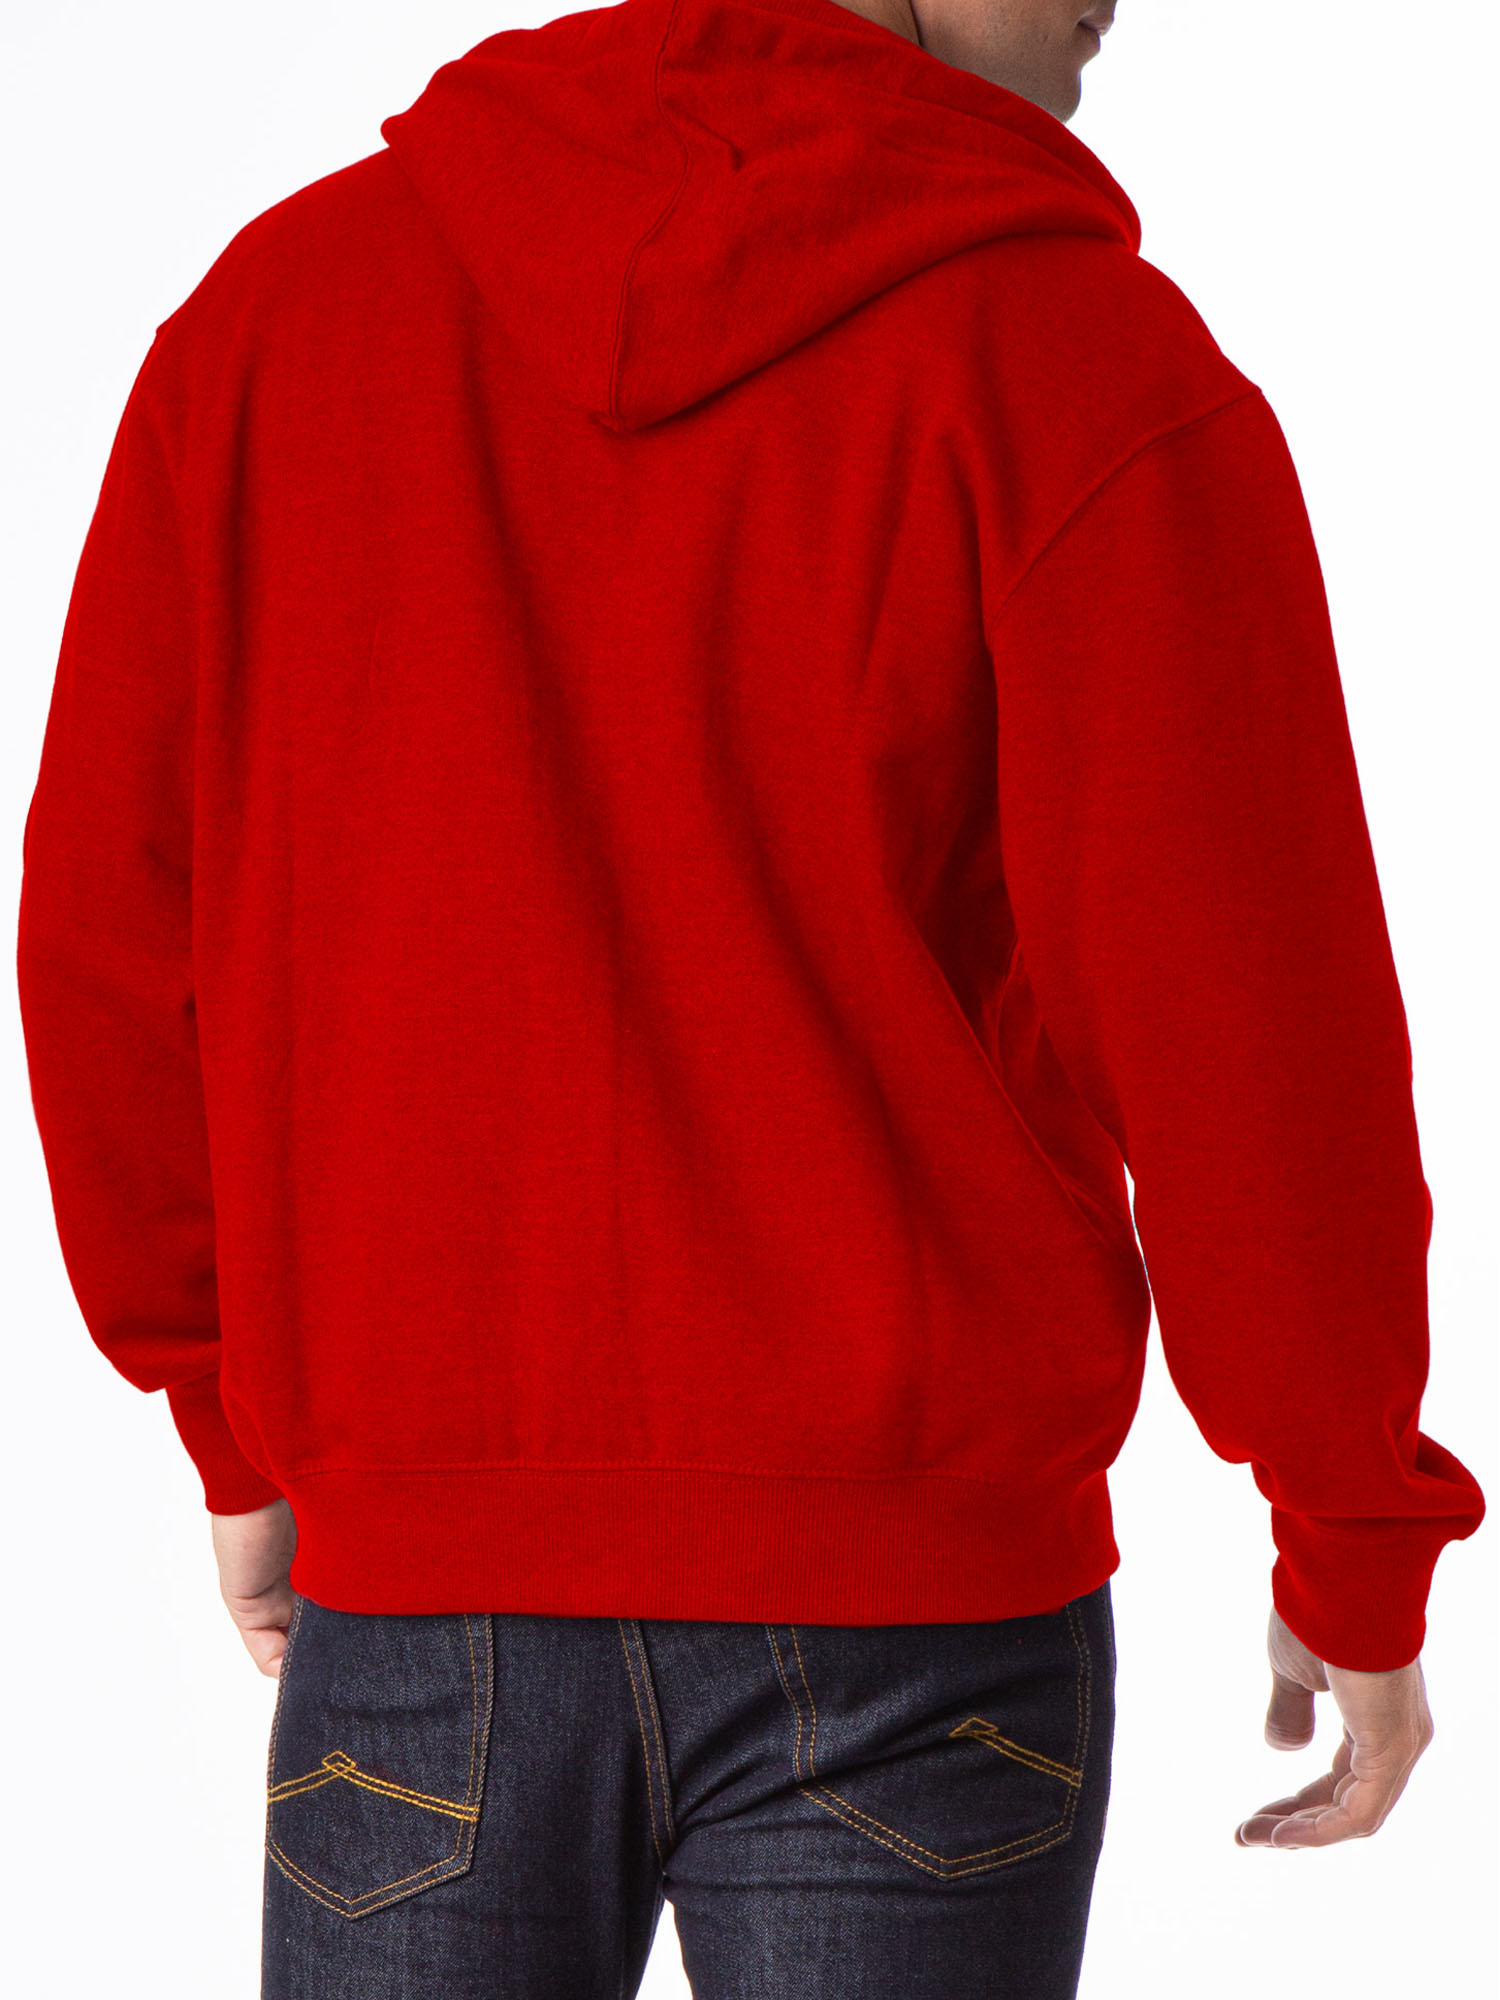 U.S. Polo Assn. Men's Fleece Full Zip Hoodie - image 3 of 3